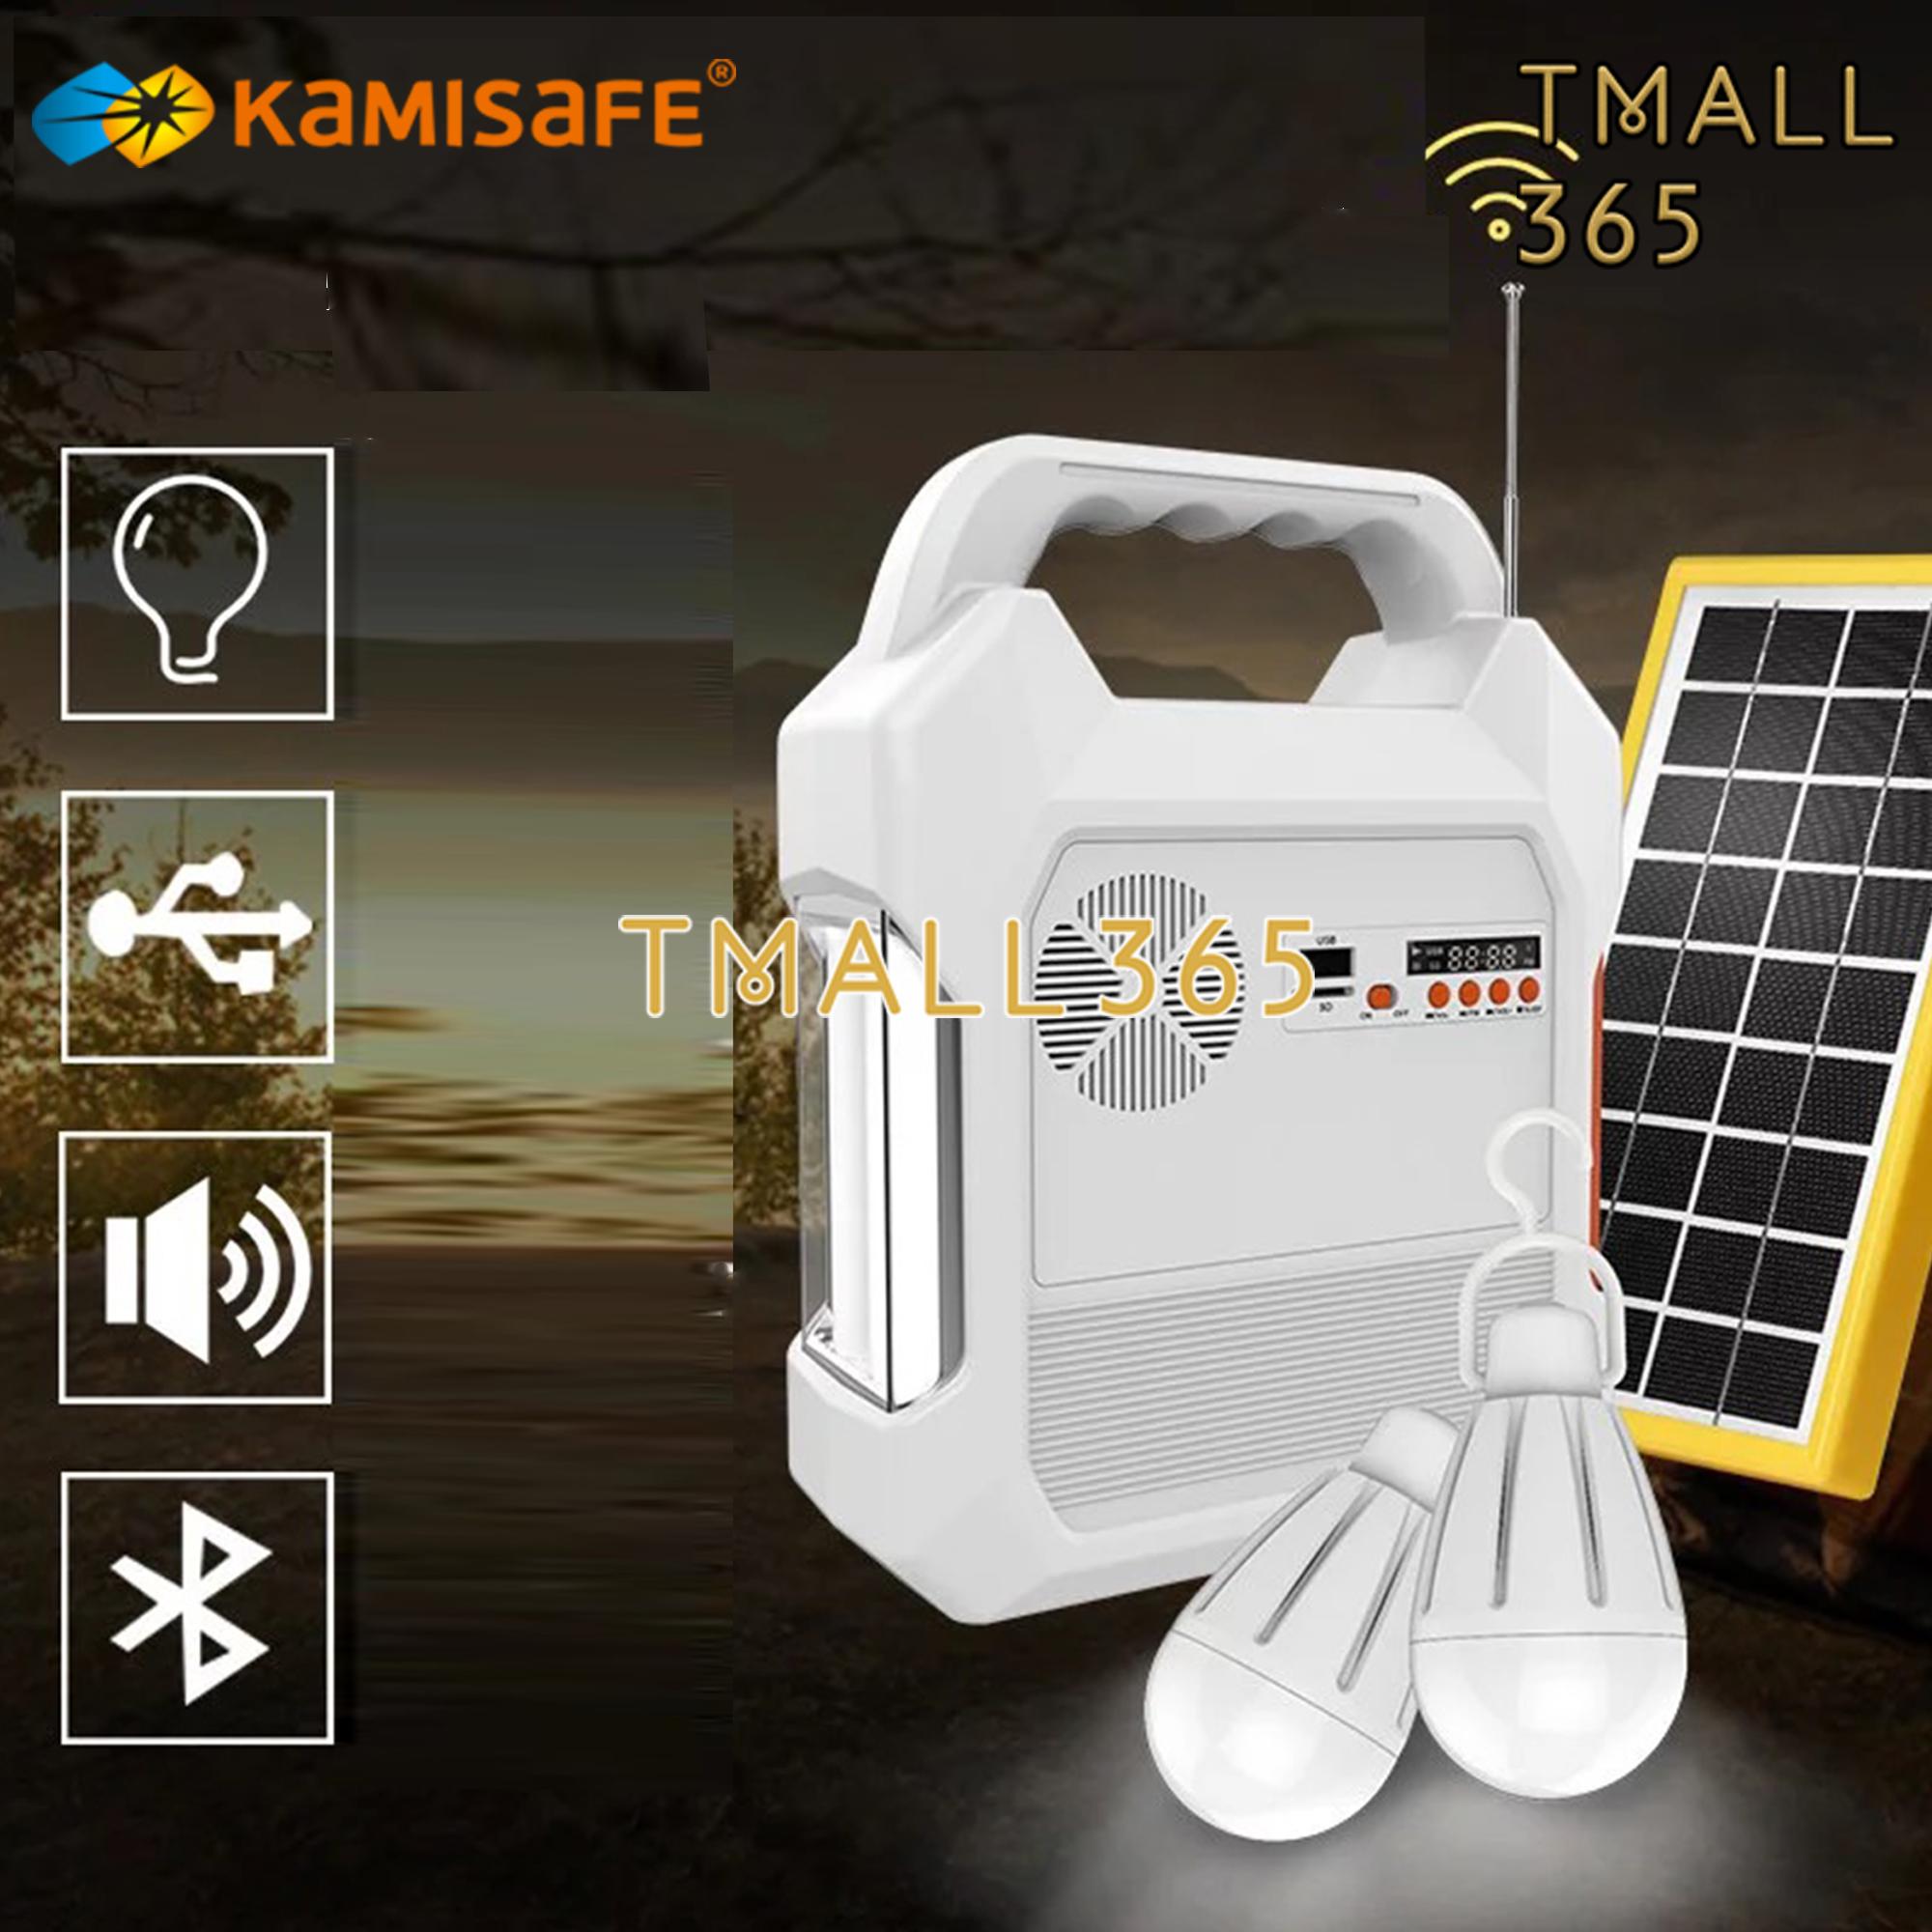 Kamisafe อุปกรณ์ชาร์จไฟสารพัดประโยชน์ ชาร์จไฟมือถือ/โคมไฟ/เล่นวิทยุ/เชื่อม Bluetooth ชาร์จไฟได้ทั้งไฟบ้าน และพลังานแสงอาทิตย์ KM-915